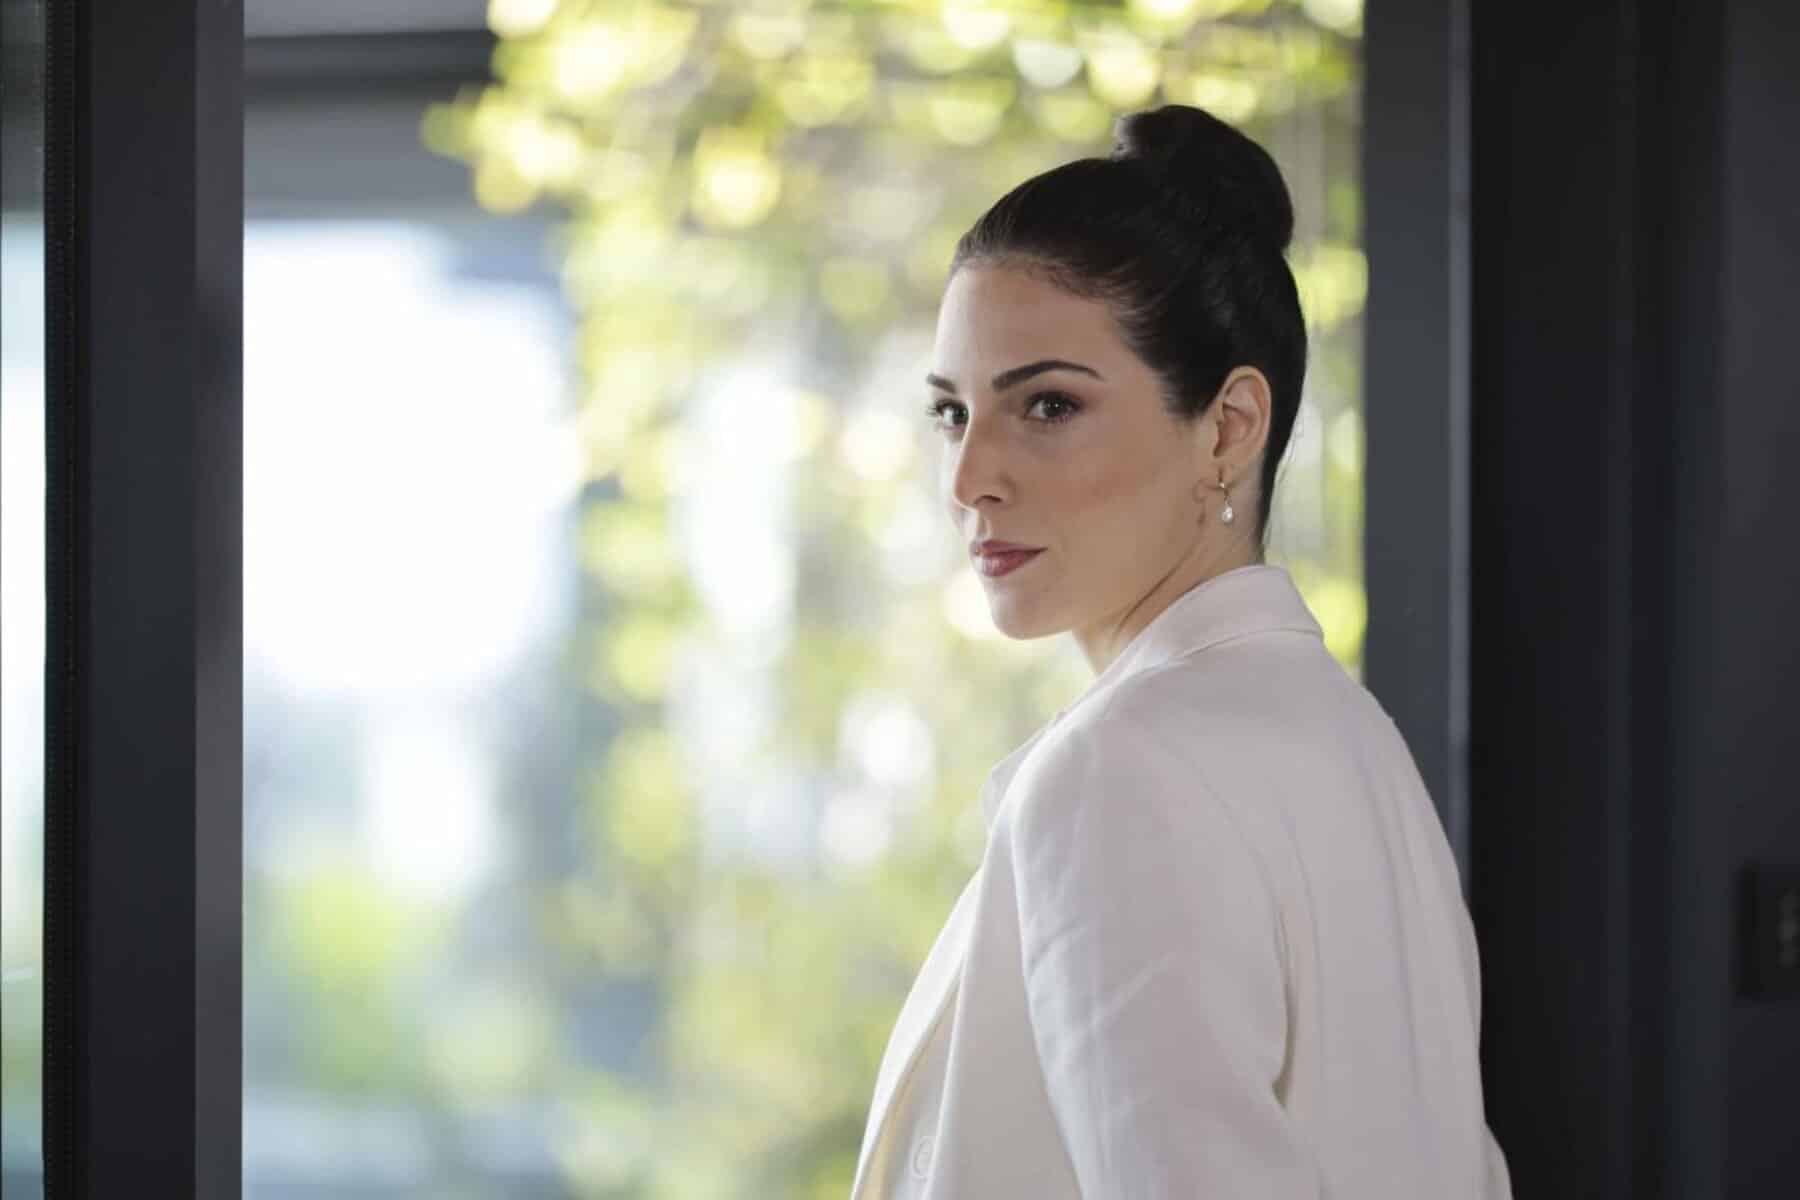  alarabtrend.com تصدر مشهد قبلة مفاجأة بين سارة وزين منصات التواصل في الحلقة 36 من مسلسل الثمن